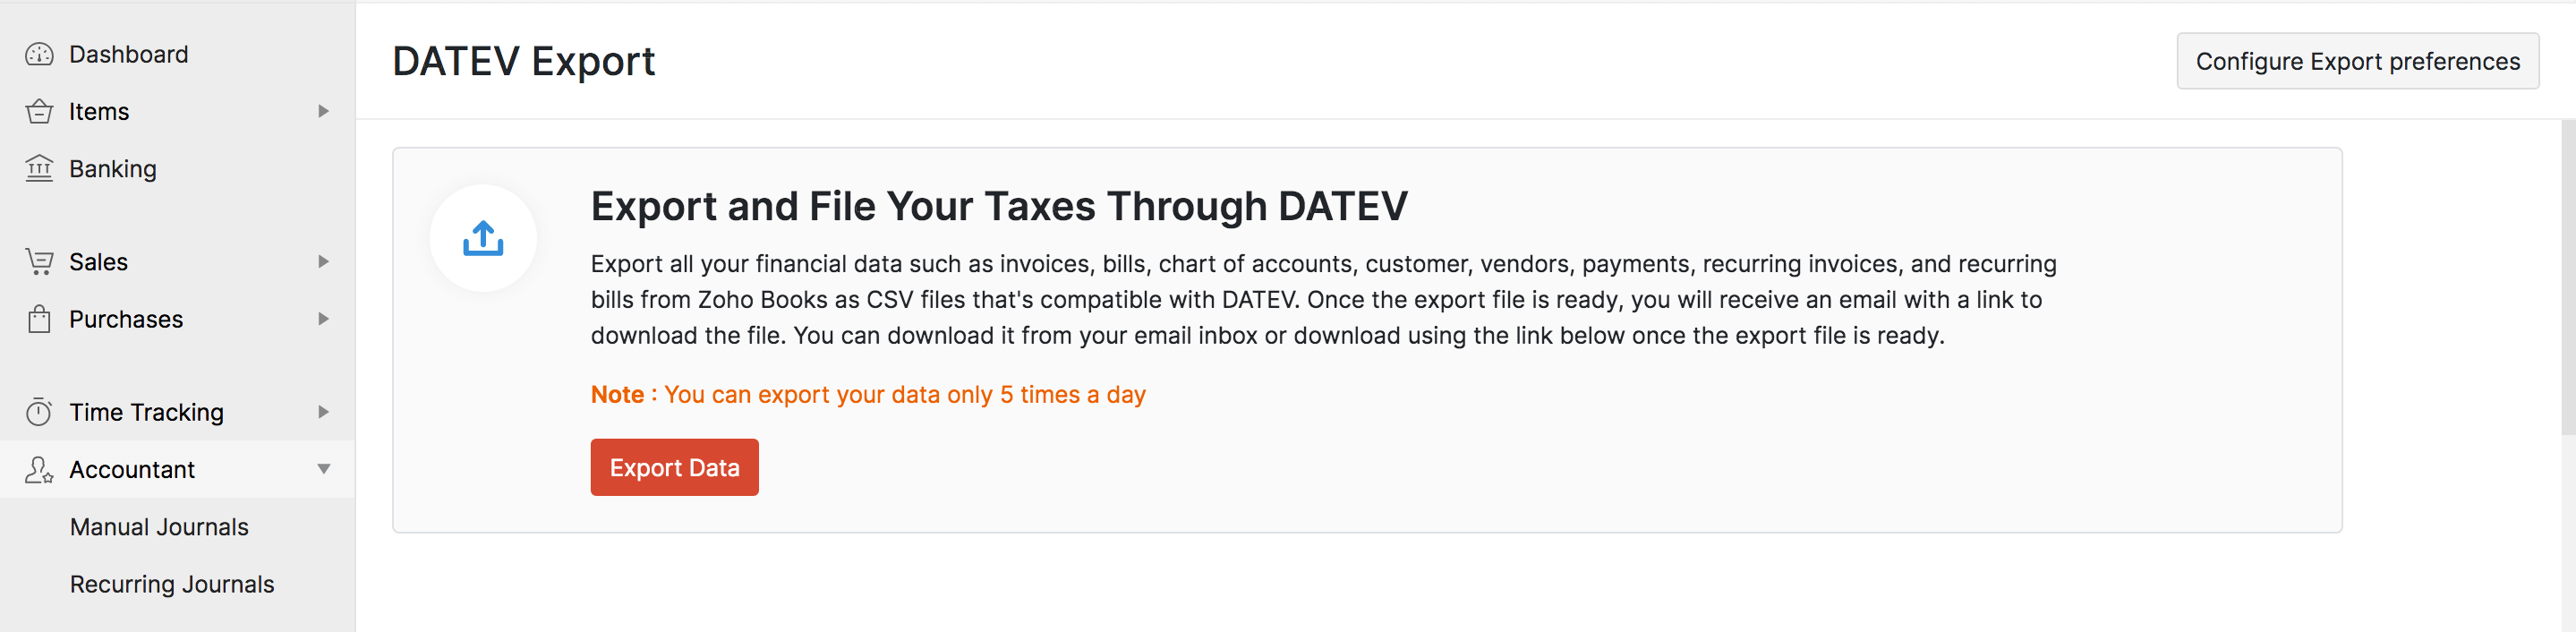 Export Data To DATEV